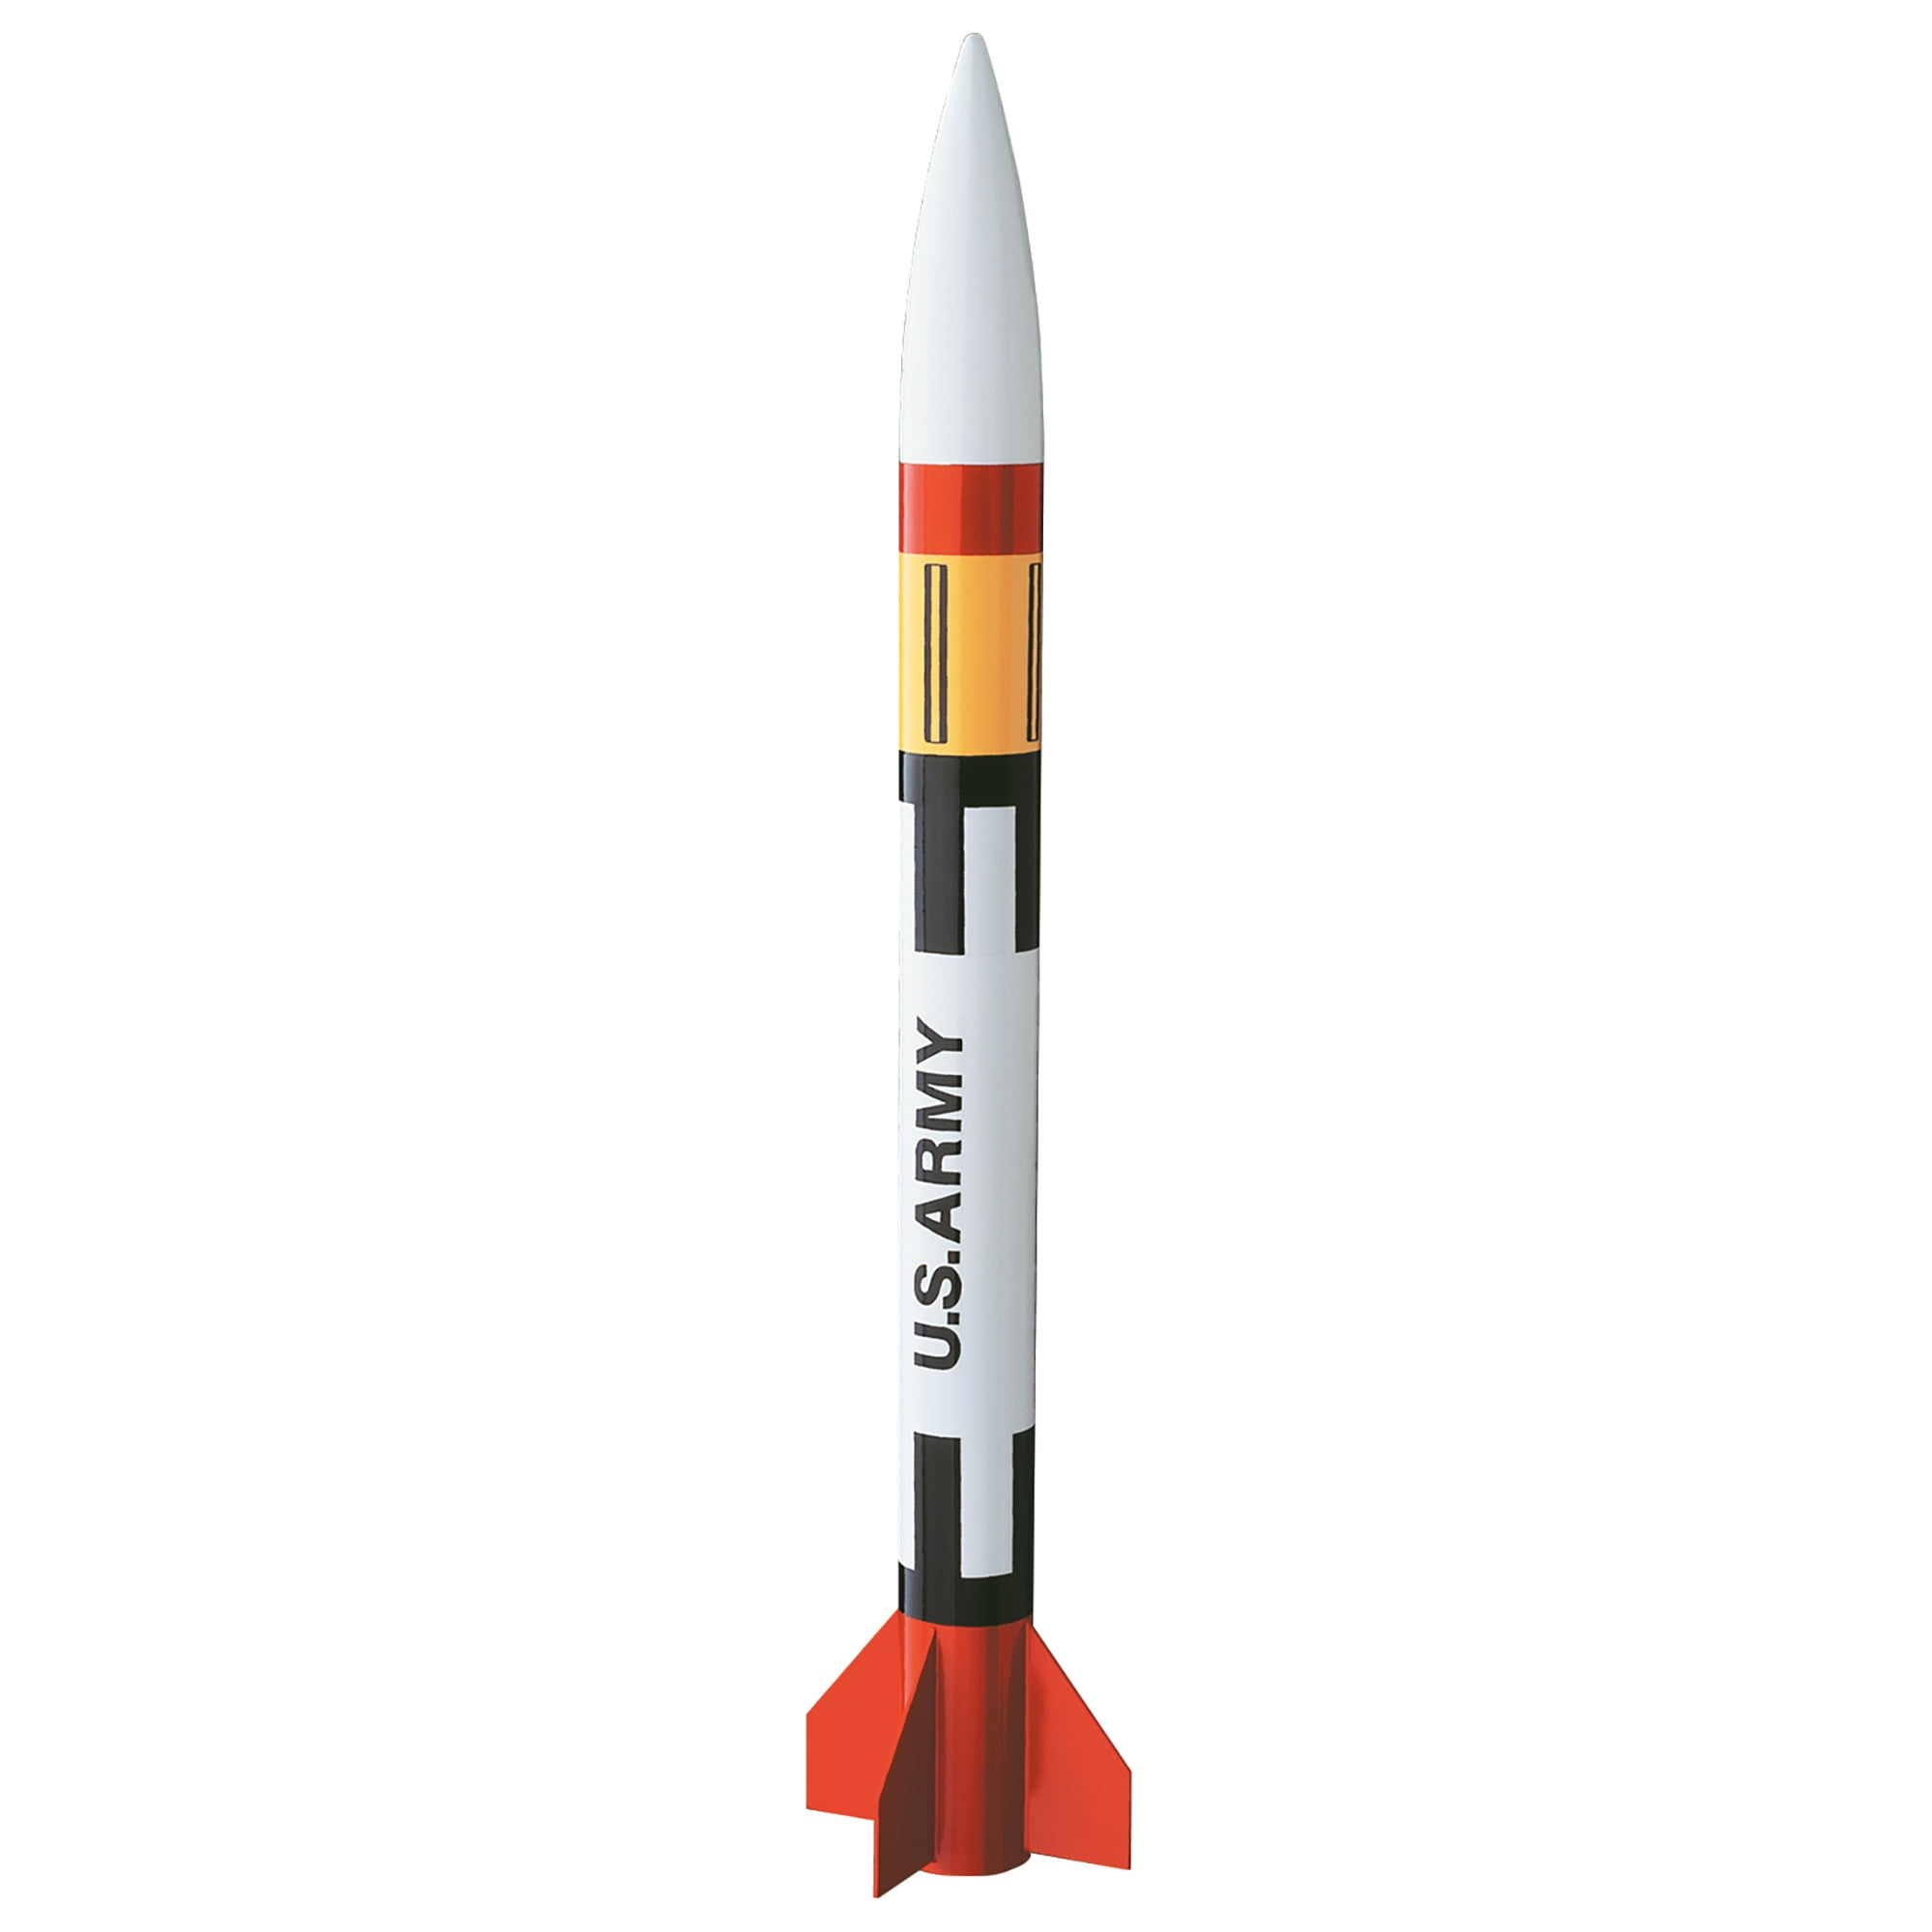 Estes Flying Model Rocket Kit Sequoia 7238 